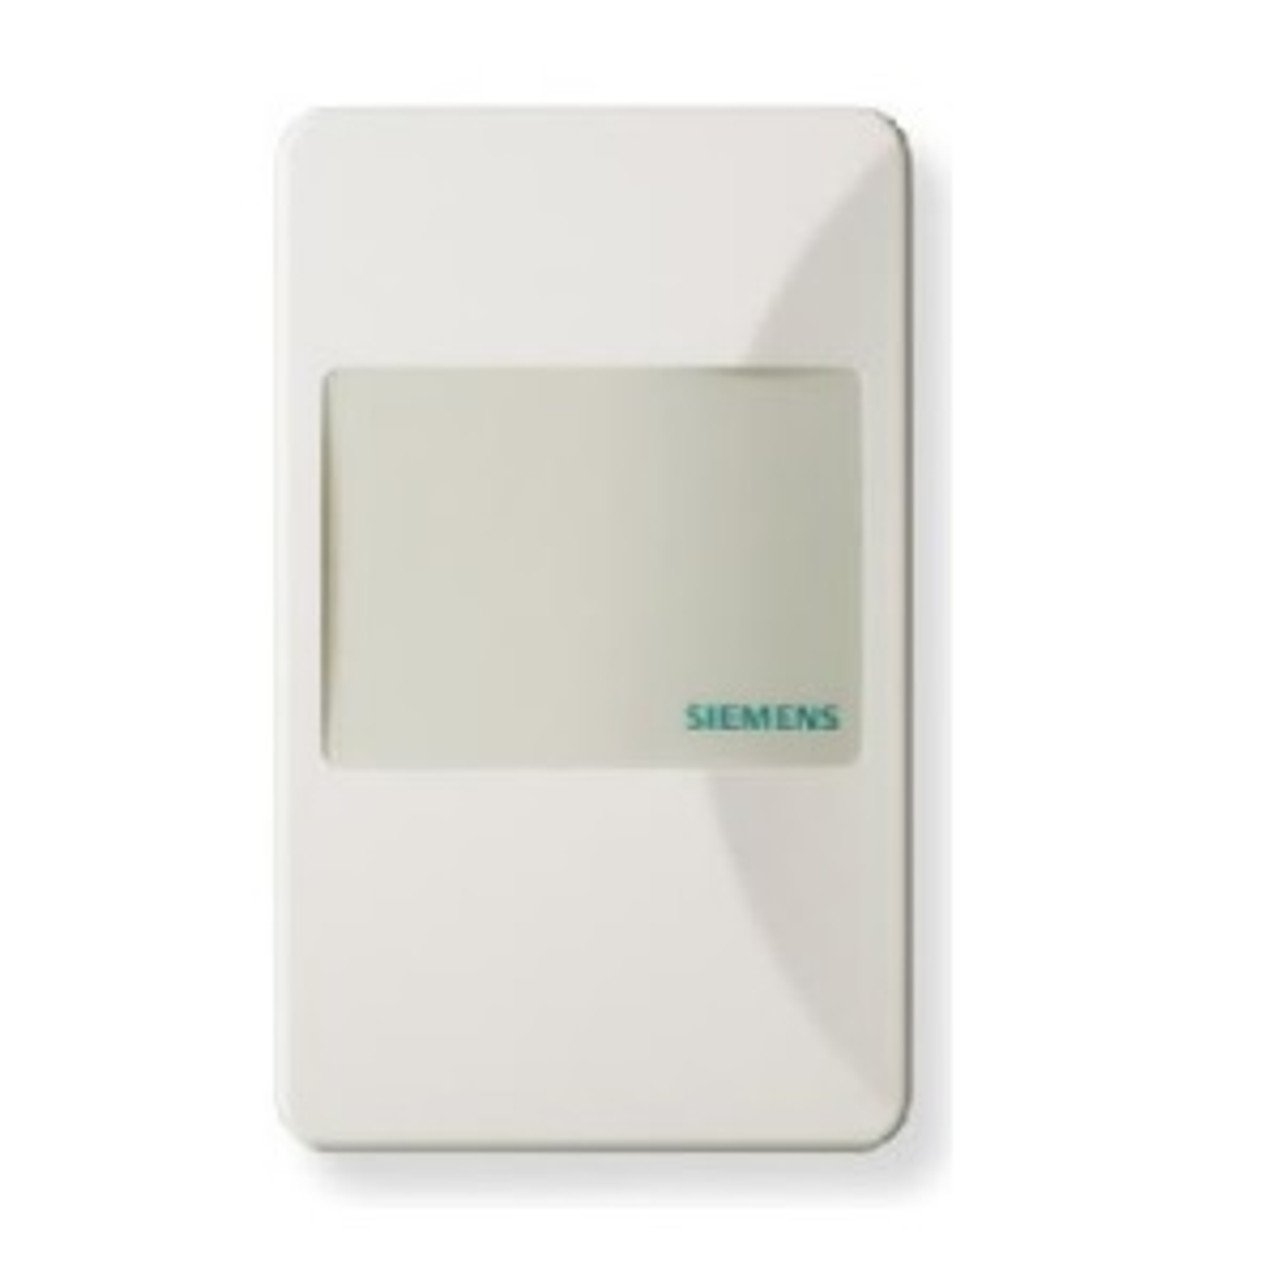 Siemens QAA2280.EWSC Room Temperature Sensor